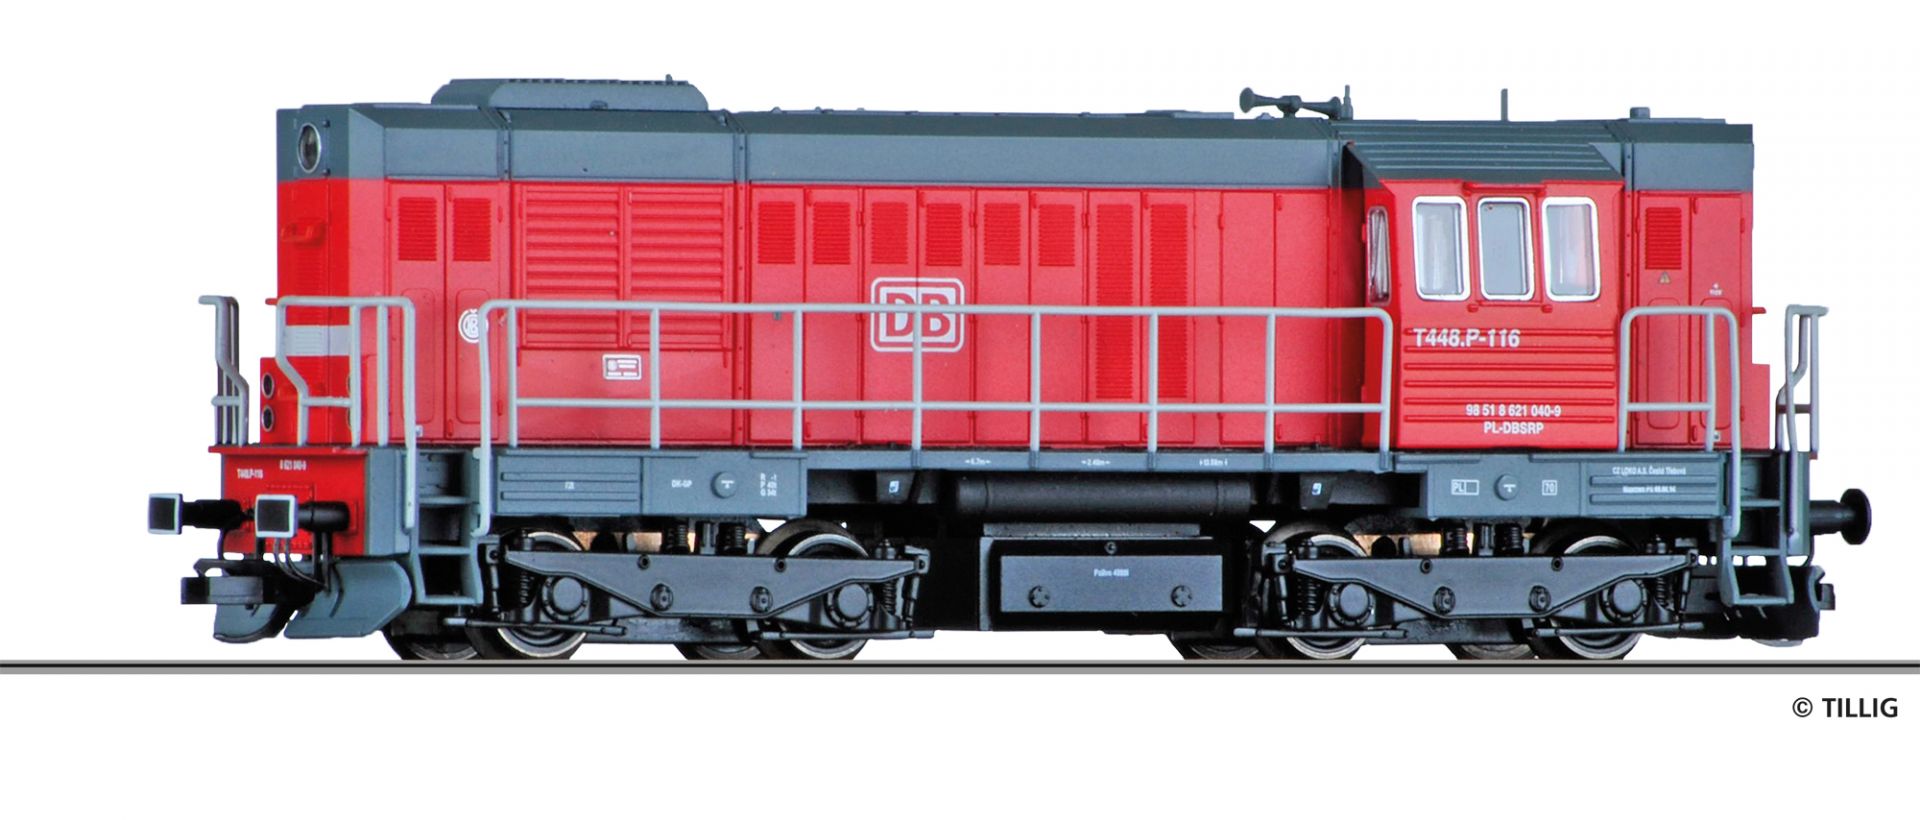 02754 | Diesellokomotive DB Schenker -werksseitig ausverkauft-